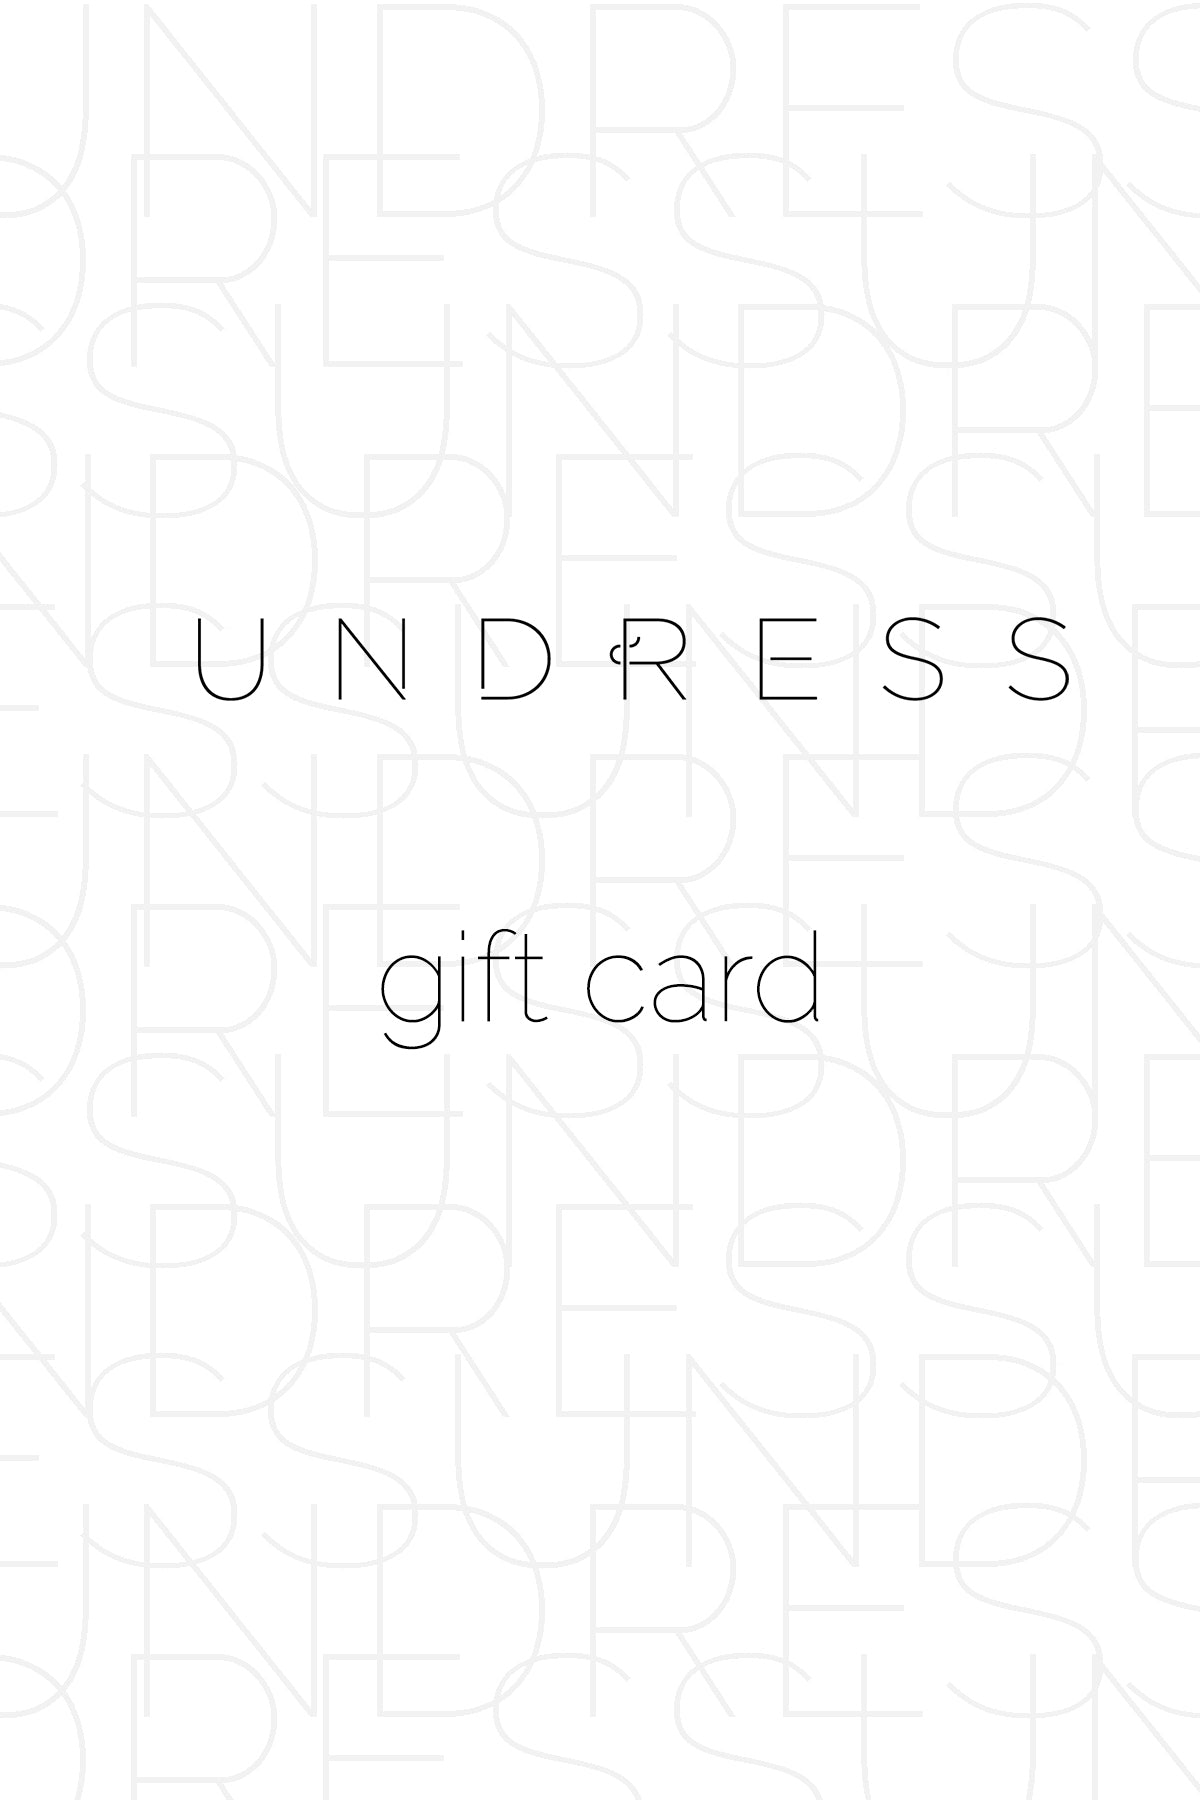 UNDRESS gift card